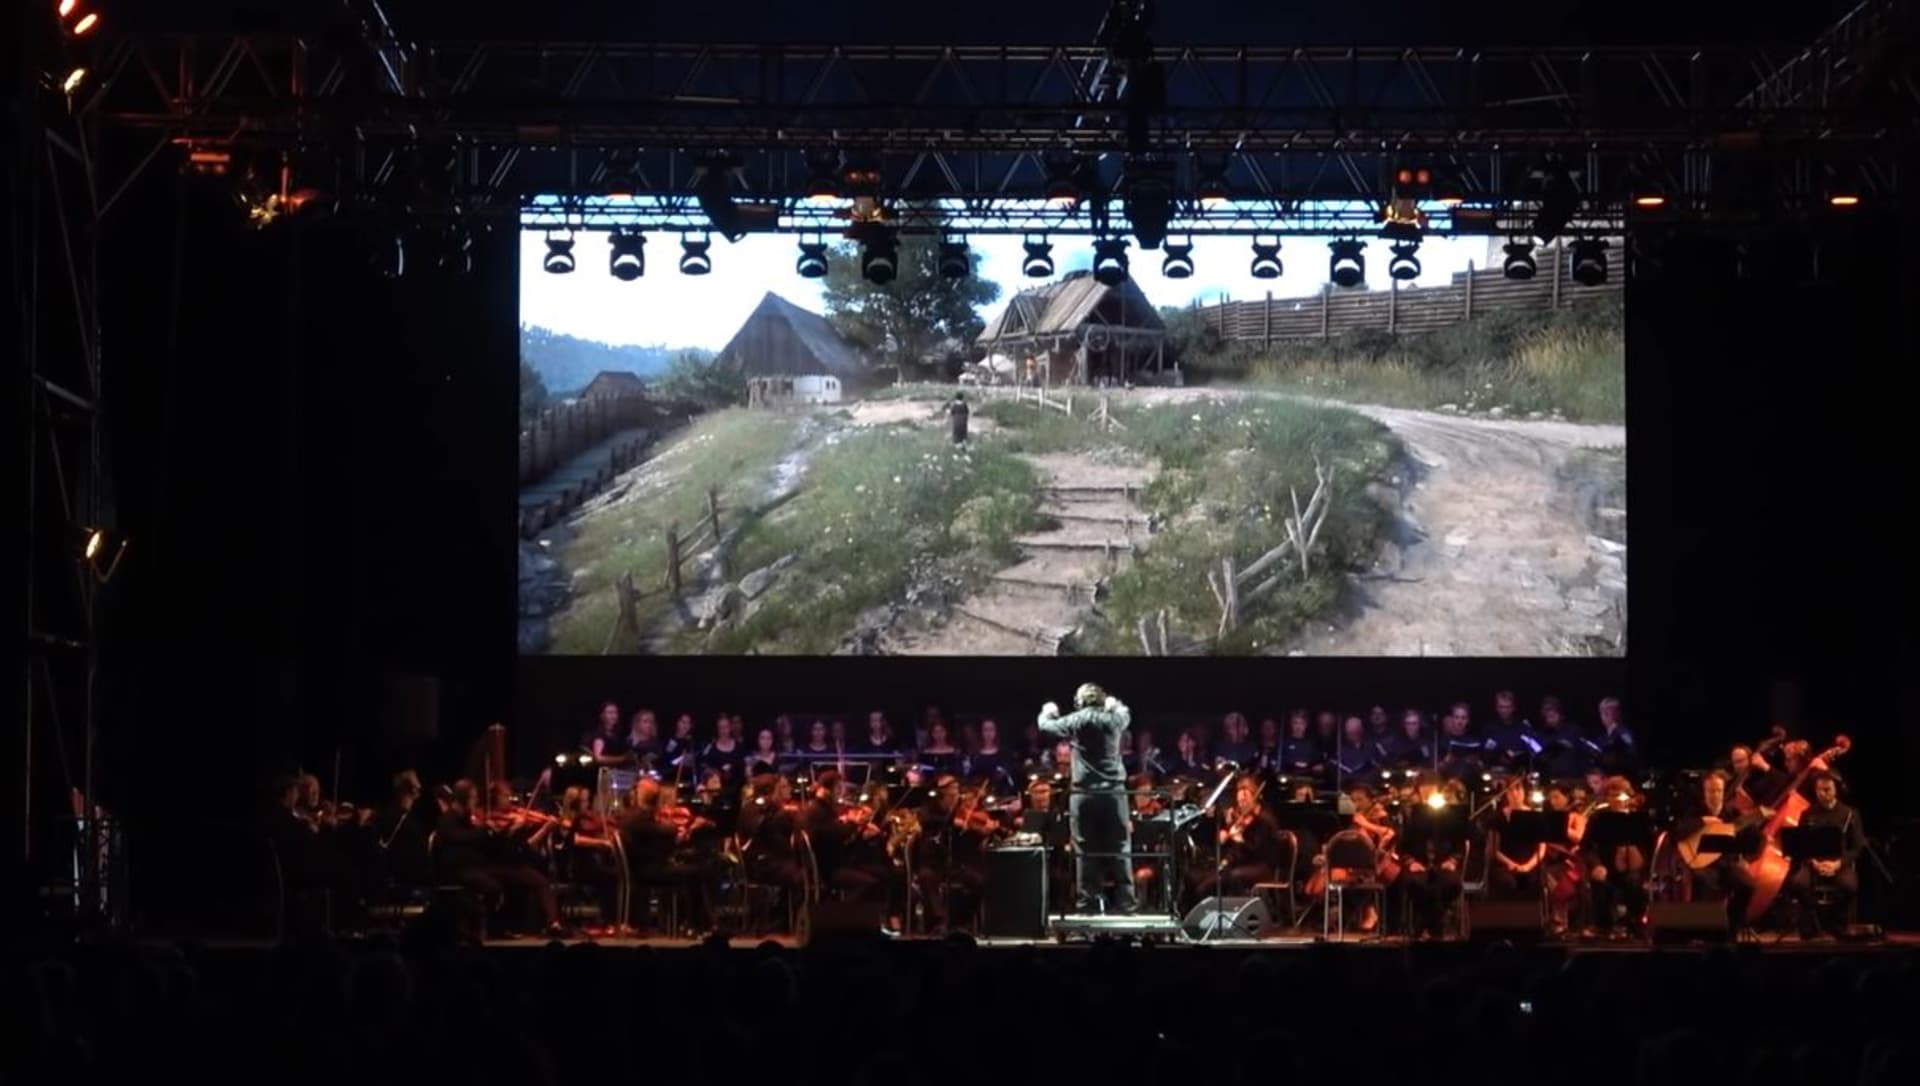 Koncert herní hudby Kingdom Come: Deliverance proběhl také před čtyřmi lety v Poděbradech.